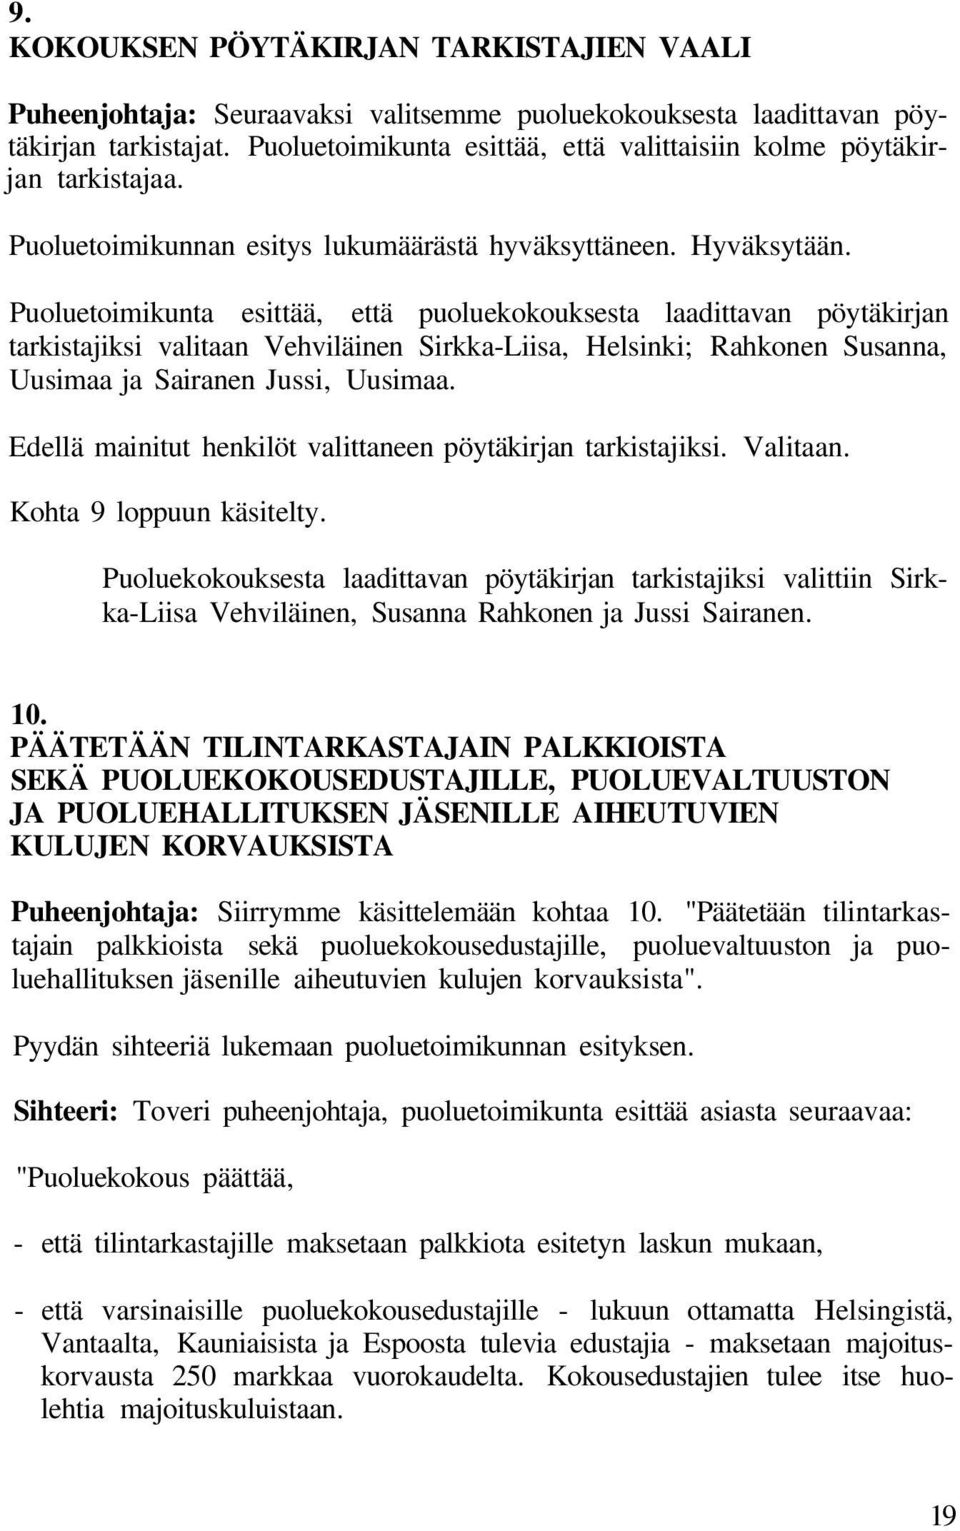 Puoluetoimikunta esittää, että puoluekokouksesta laadittavan pöytäkirjan tarkistajiksi valitaan Vehviläinen Sirkka-Liisa, Helsinki; Rahkonen Susanna, Uusimaa ja Sairanen Jussi, Uusimaa.